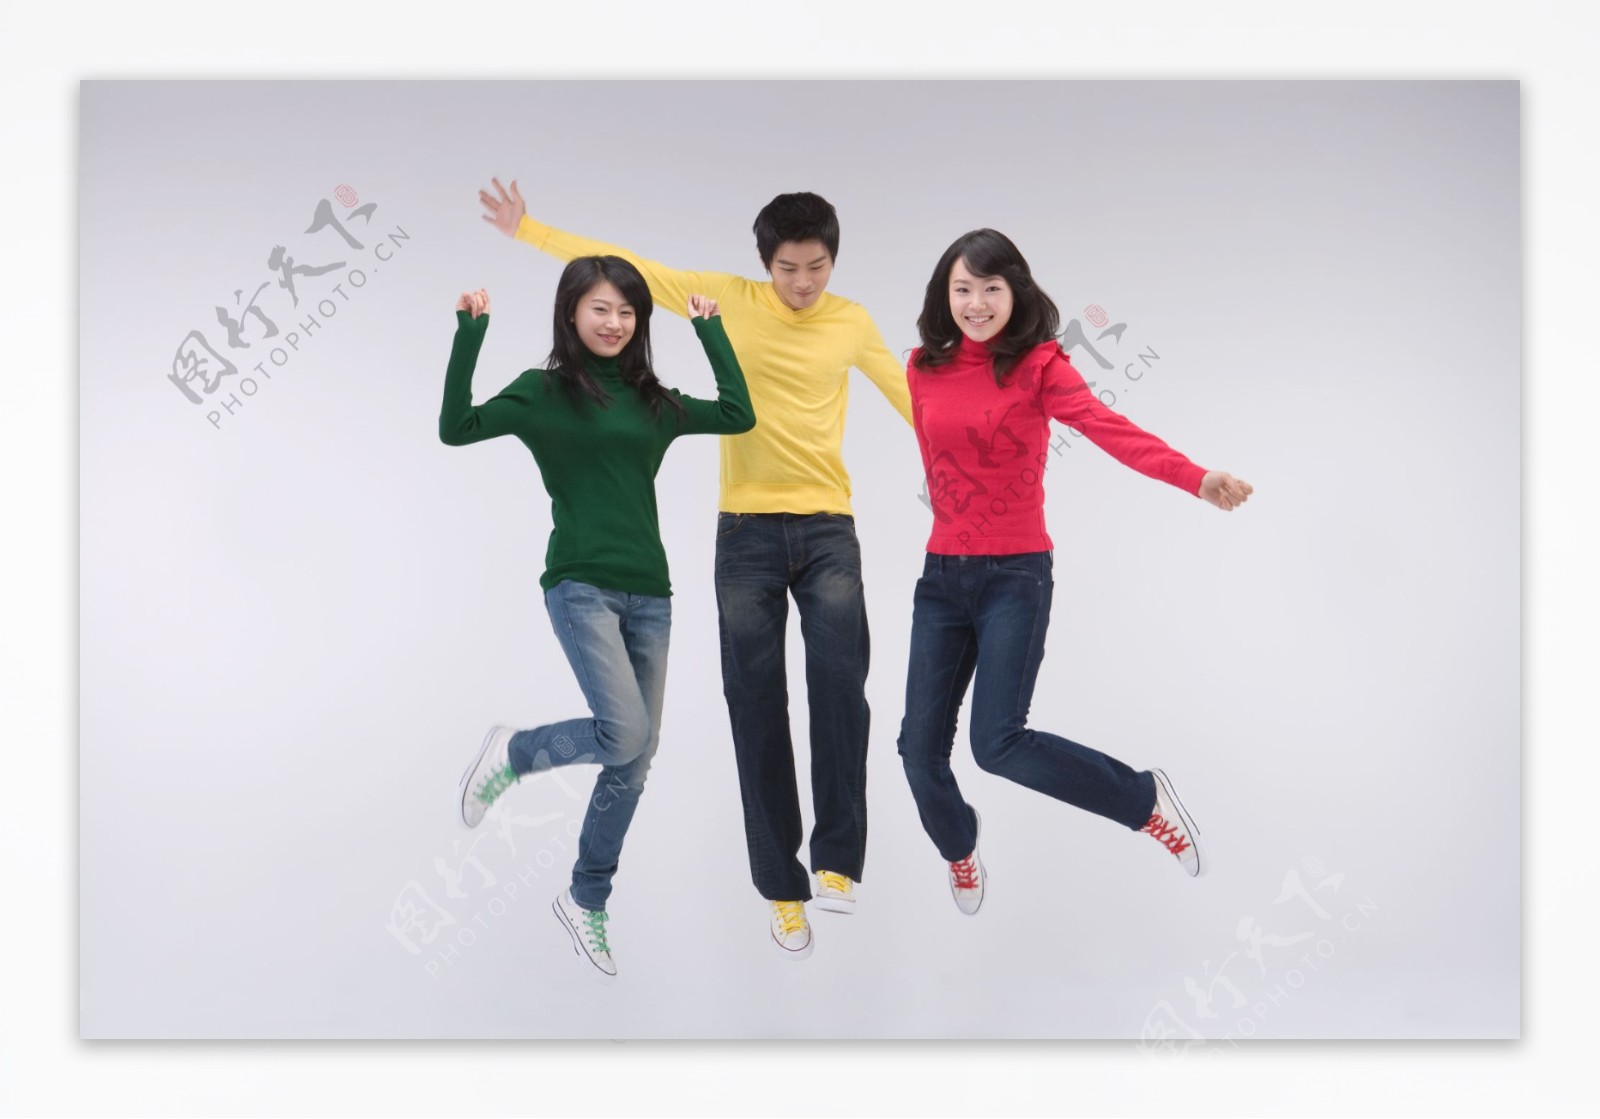 三个欢呼跳跃活力青年图片